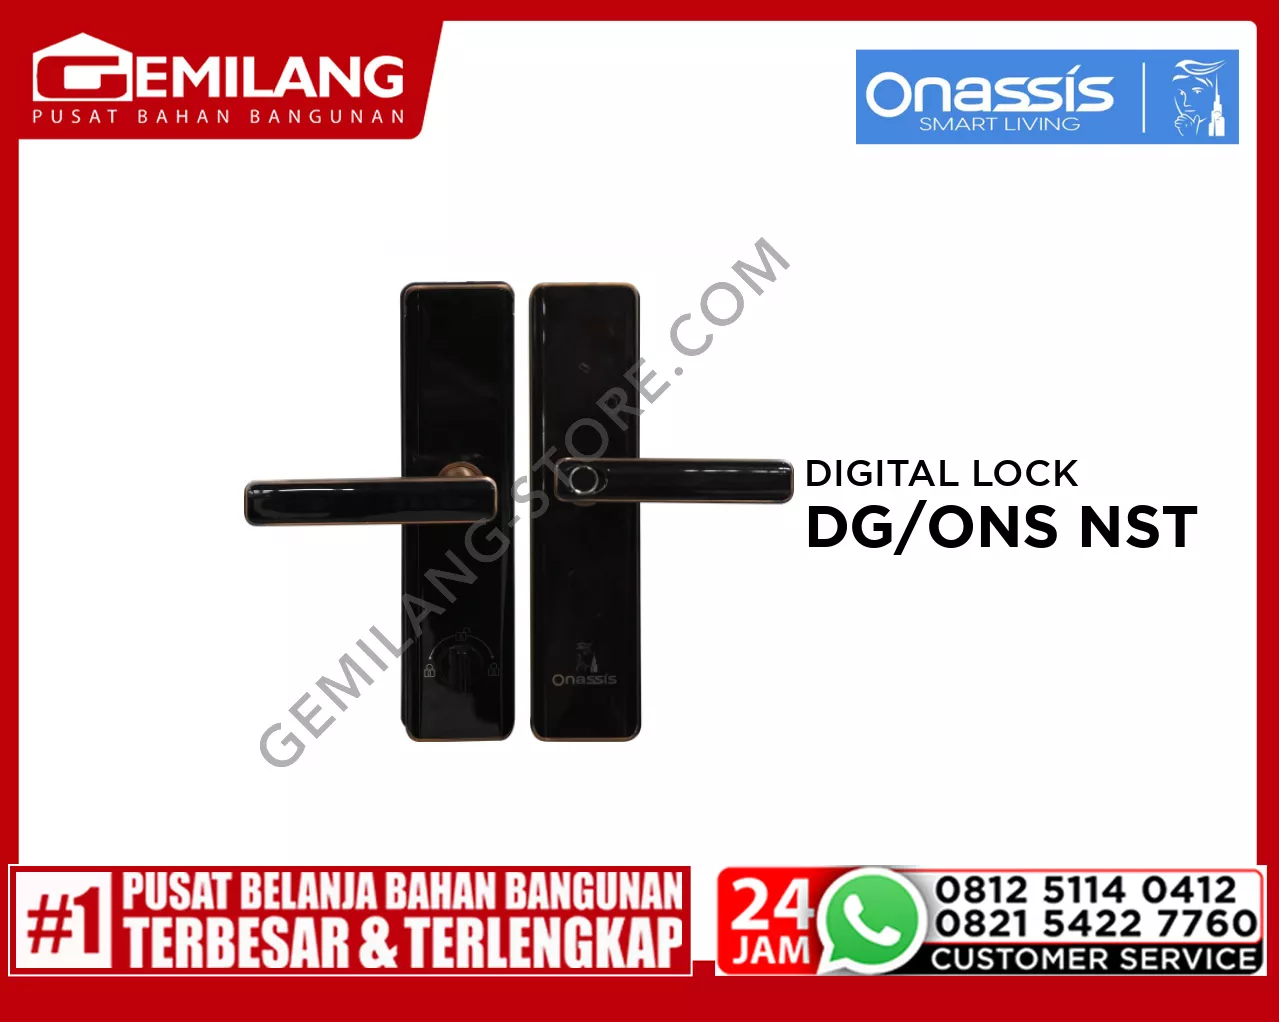 ONASSIS DIGITAL LOCK FOR WOODEN DOOR - DG/ONS NESTA PRO